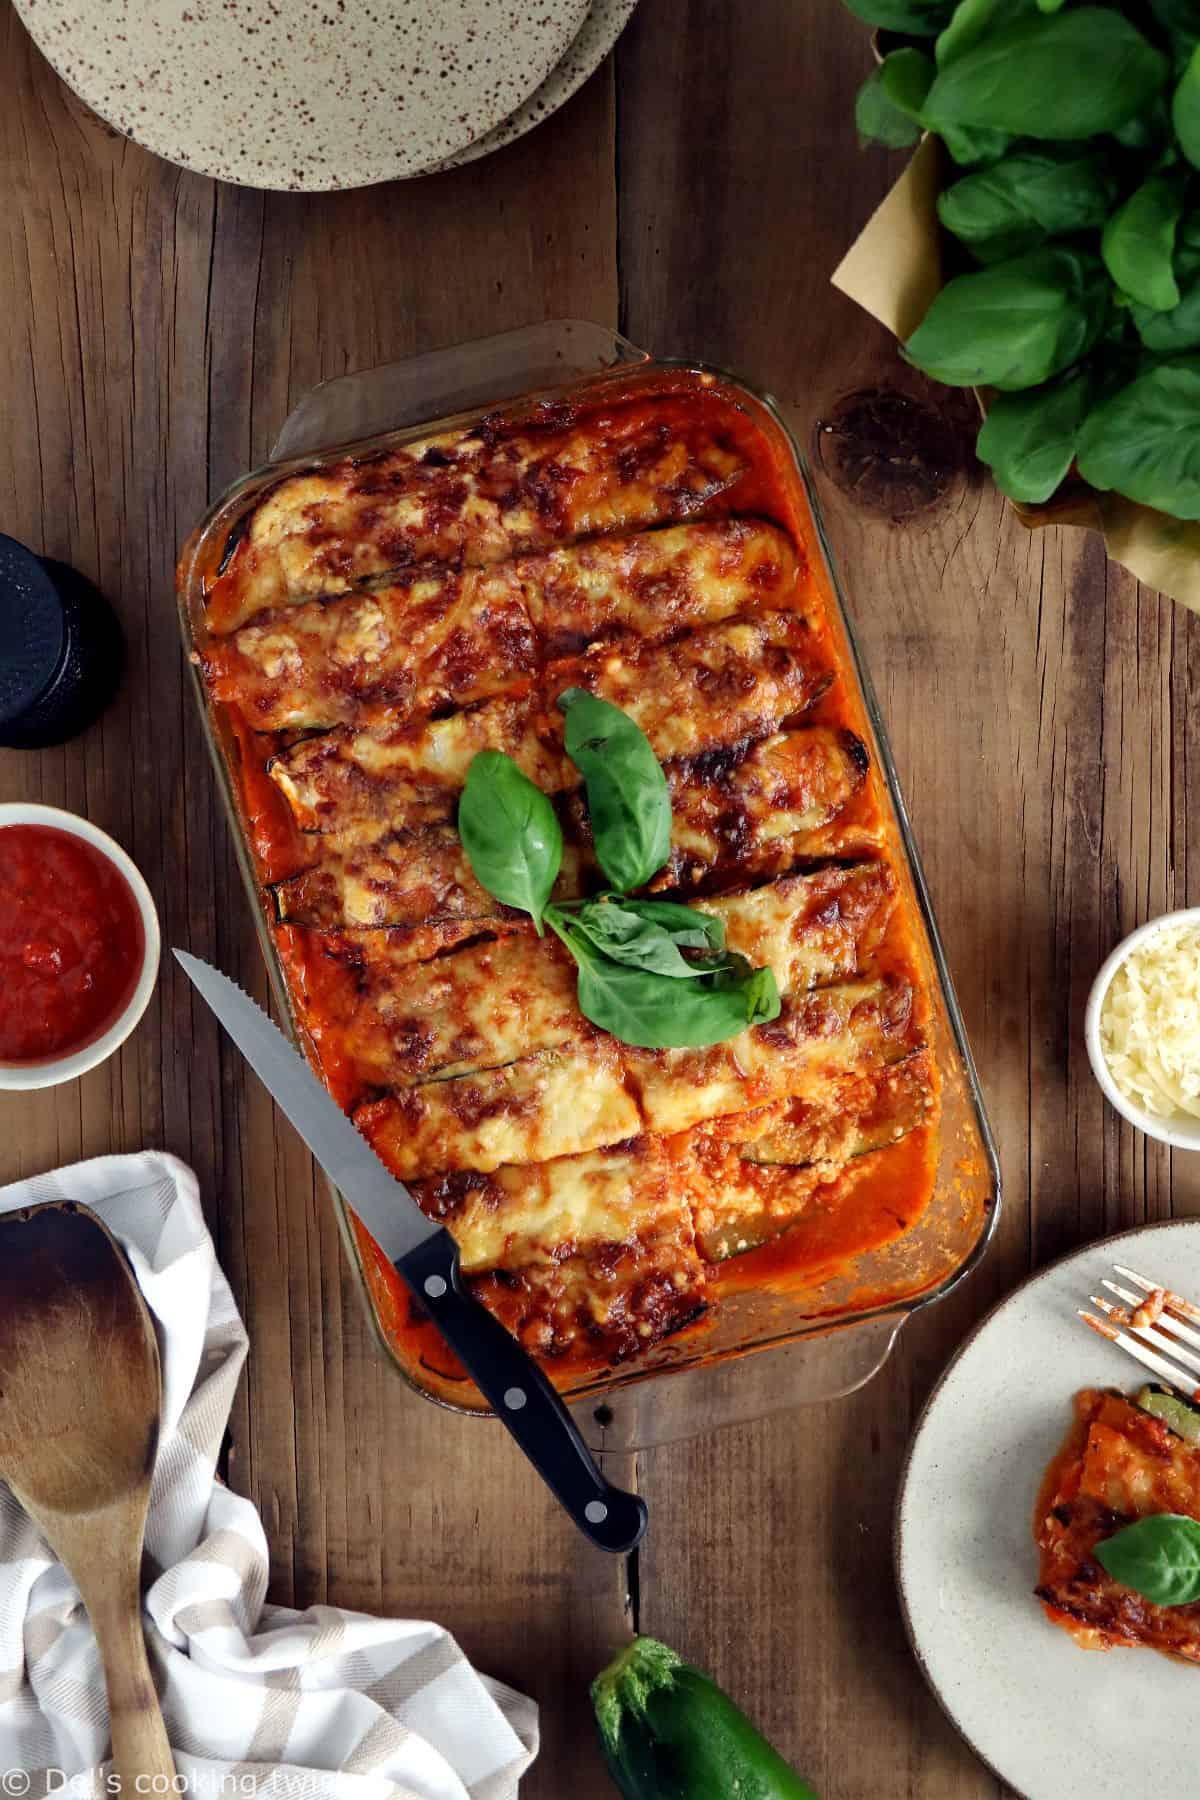 Facile à réaliser et naturellement sans gluten, cette recette de lasagnes végétariennes aux courgettes est ulta gourmande.